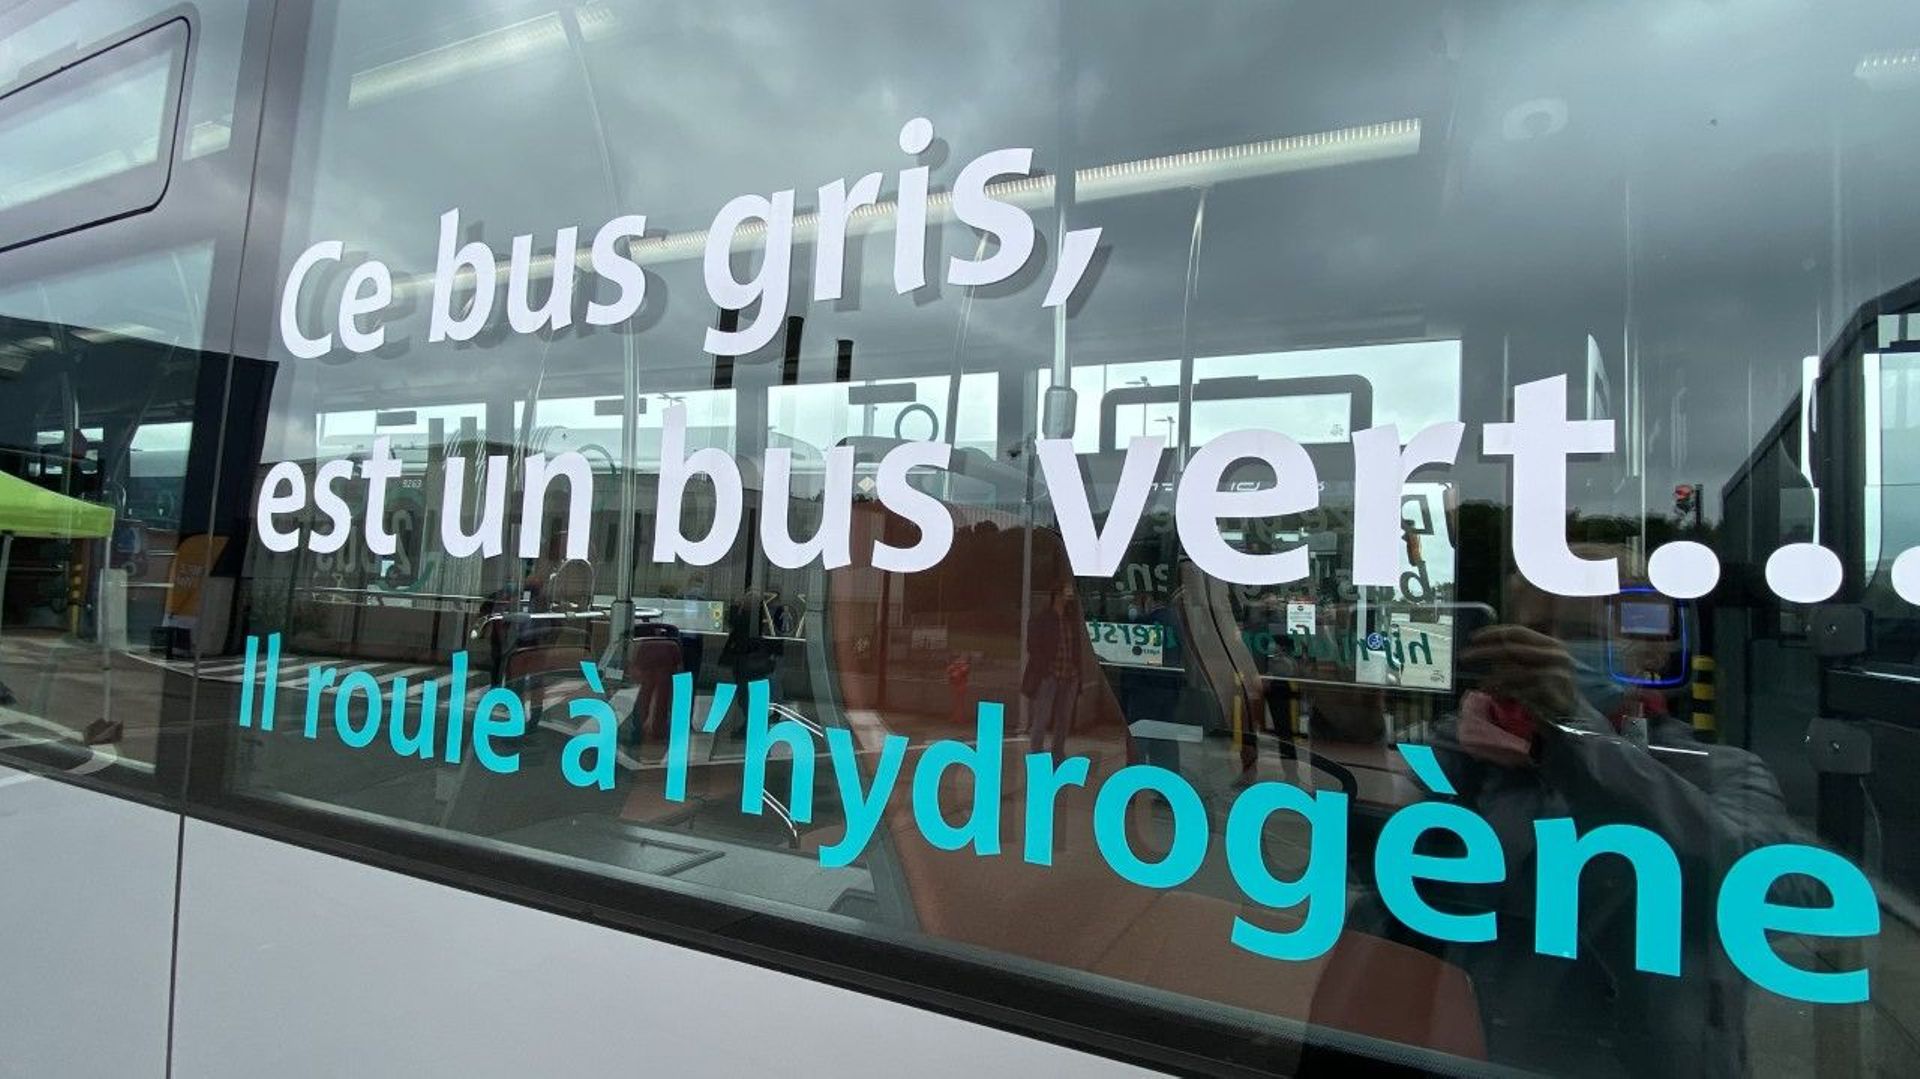 Avec 300 à 500 km pour 40 kg d’hydrogène embarqués, l’autonomie de ce bus "vert" est doublée par rapport à un bus électrique.